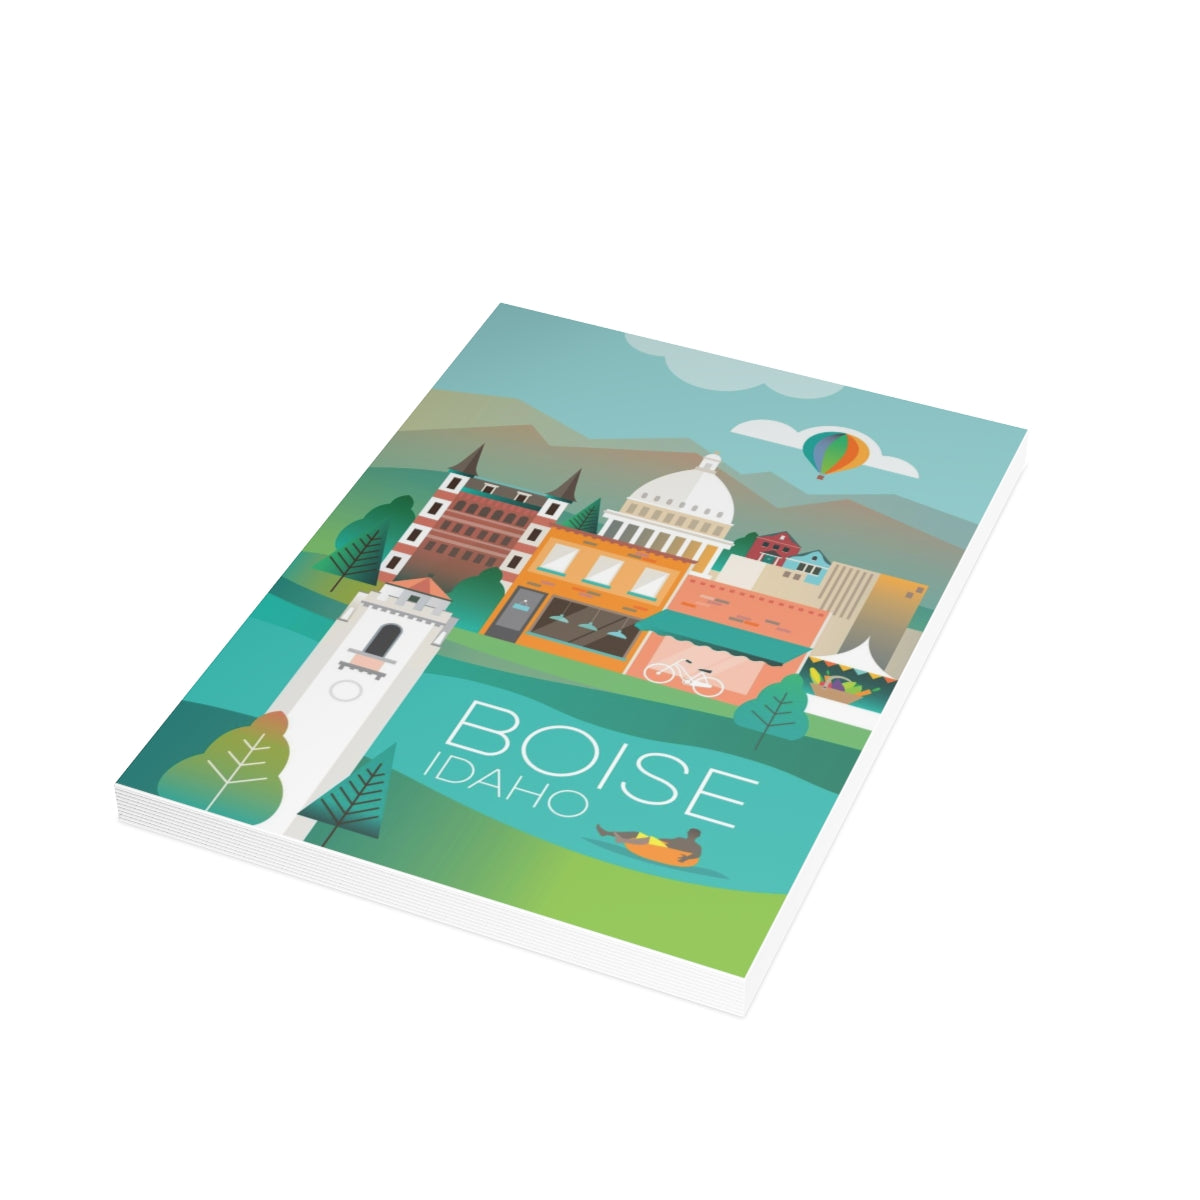 Cartes de notes mates pliées Boise + enveloppes (10 pièces)